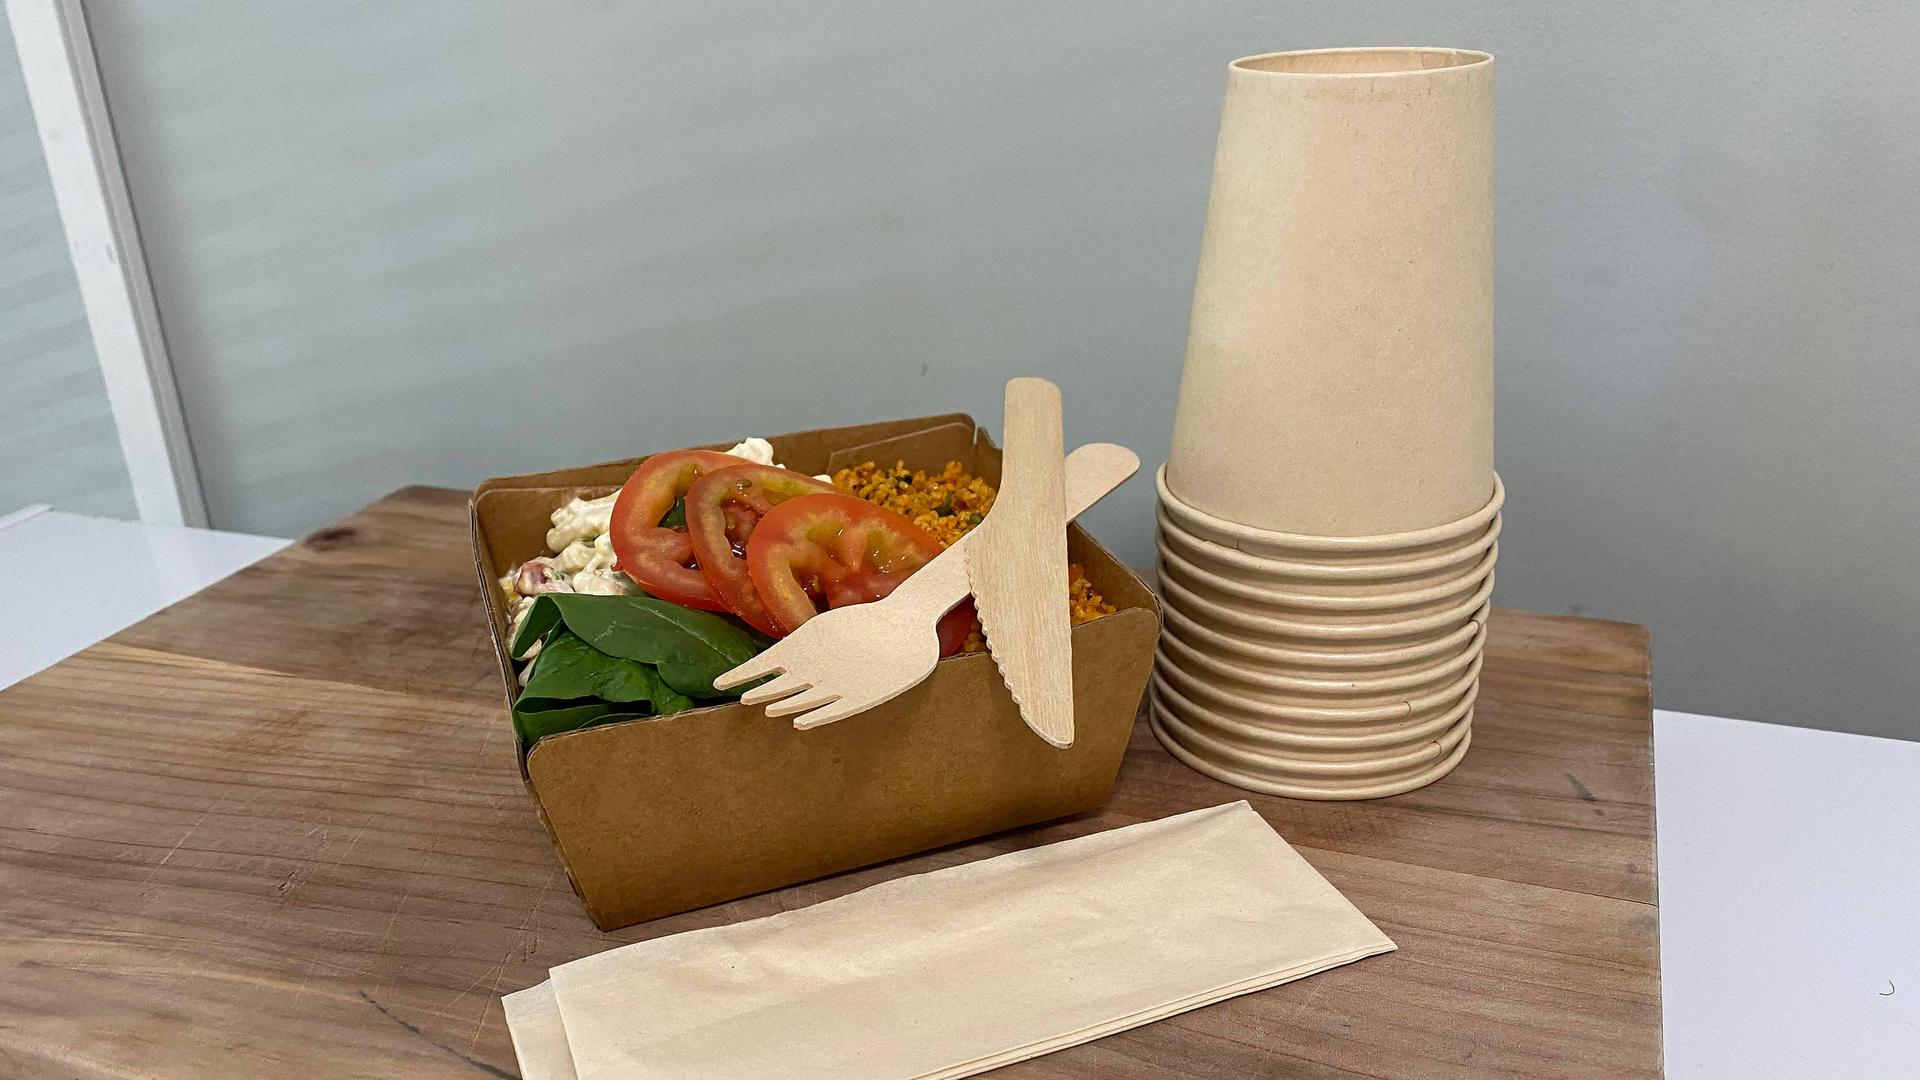 In einem Pappteller befindet sich ein Salat, darauf liegen eine Gabel und ein Messer aus Holz, daneben steht ein Stapel Pappbecher.